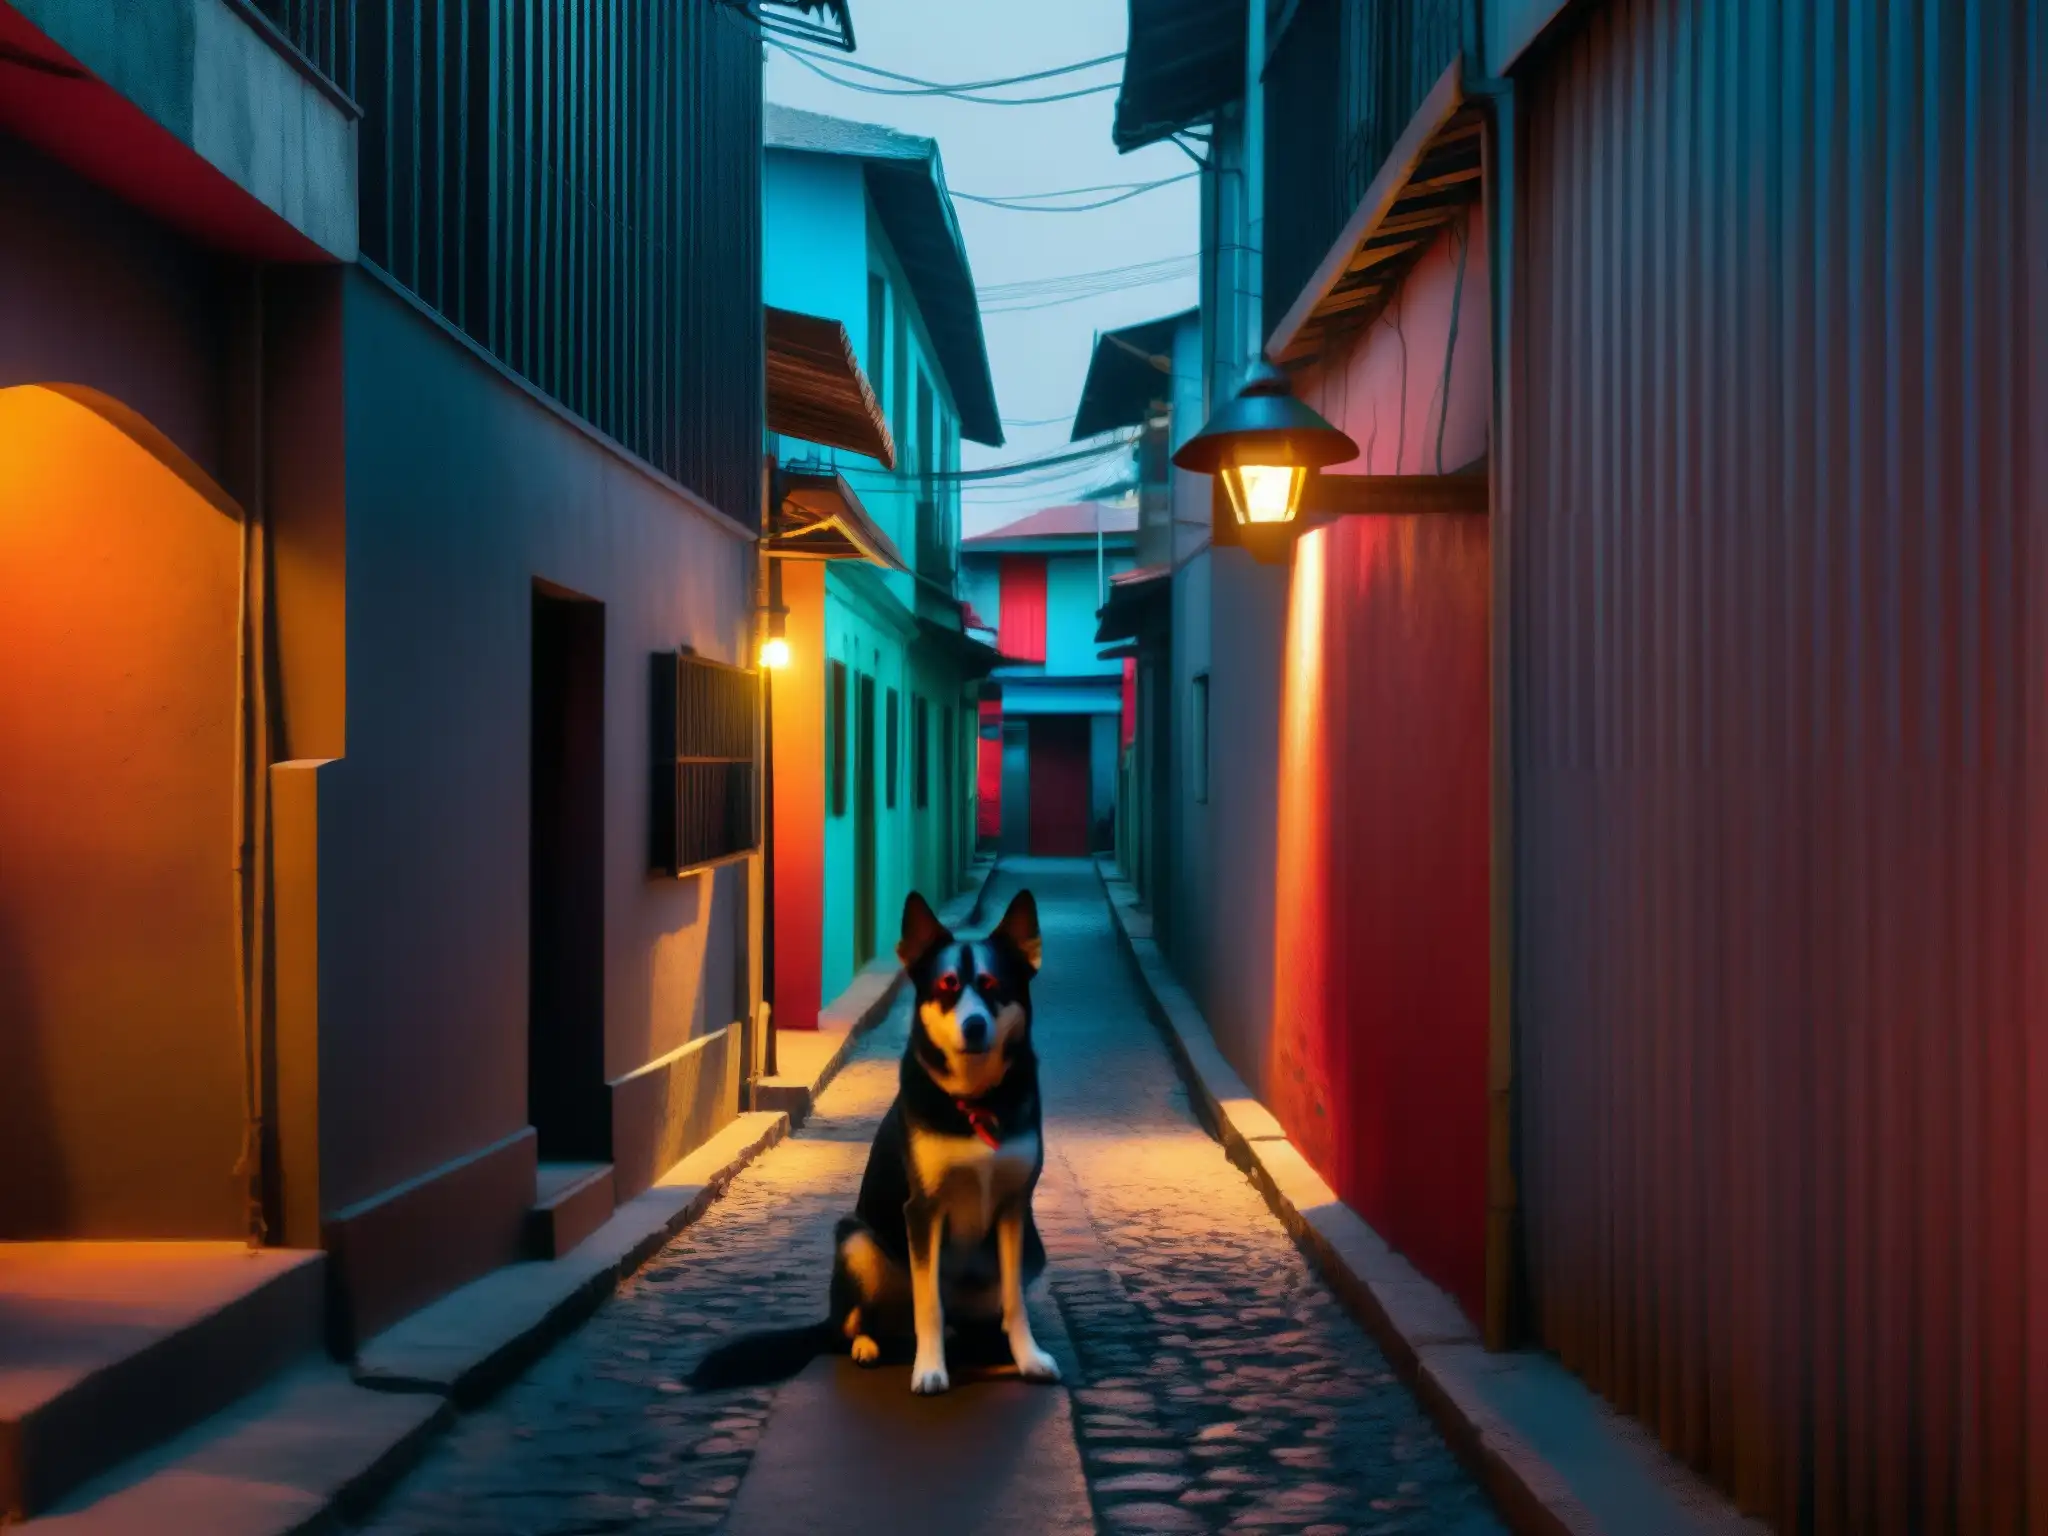 Un callejón oscuro en una ciudad de América Central, iluminado por una solitaria farola